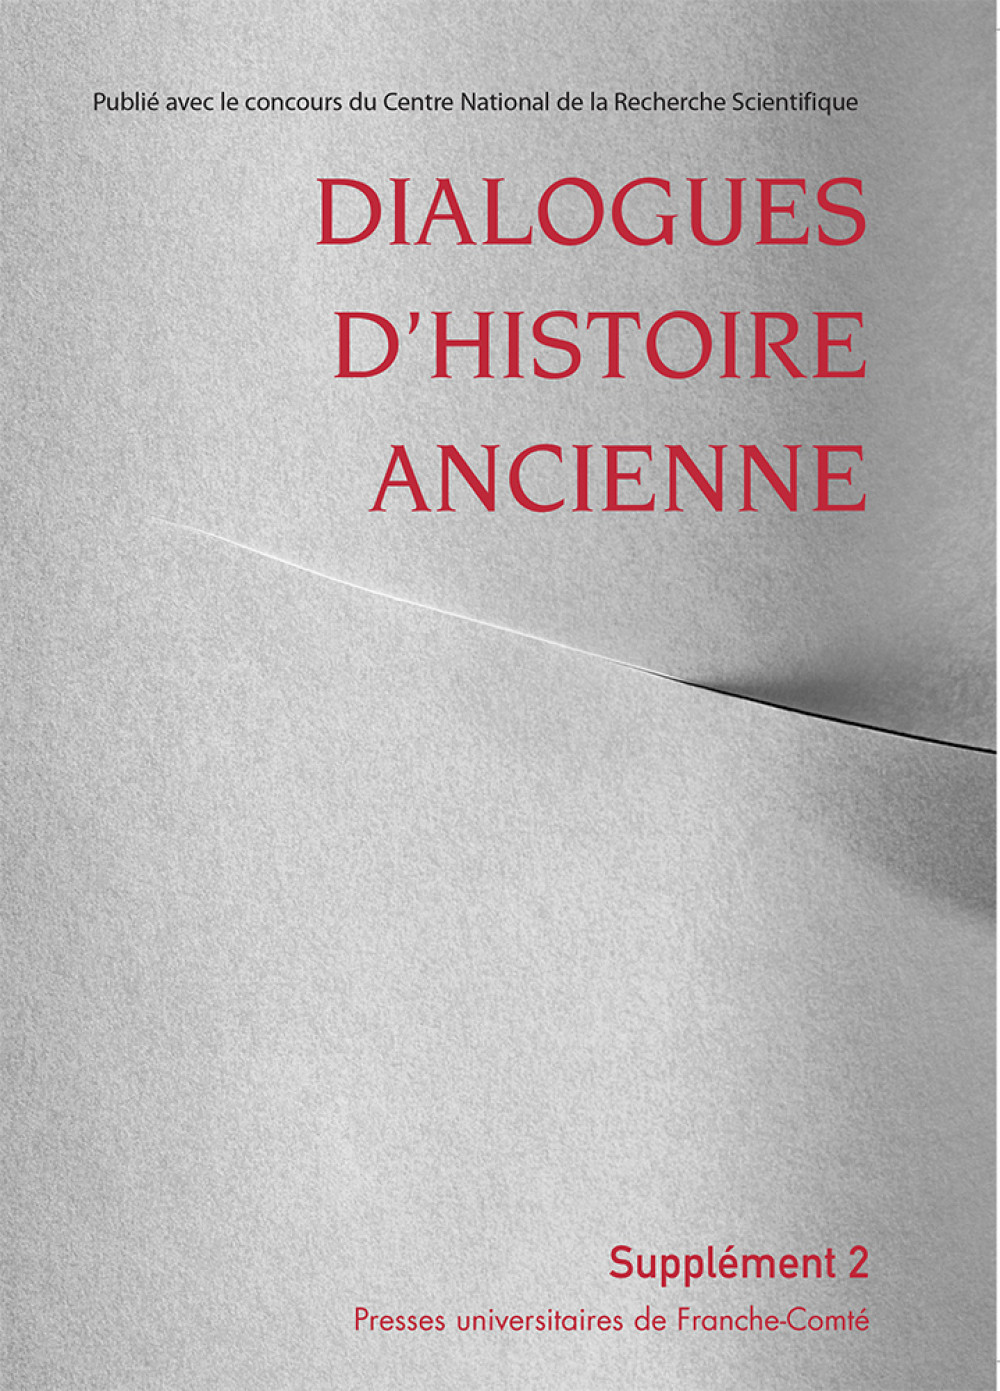 Dialogues d'Histoire Ancienne supplément 2